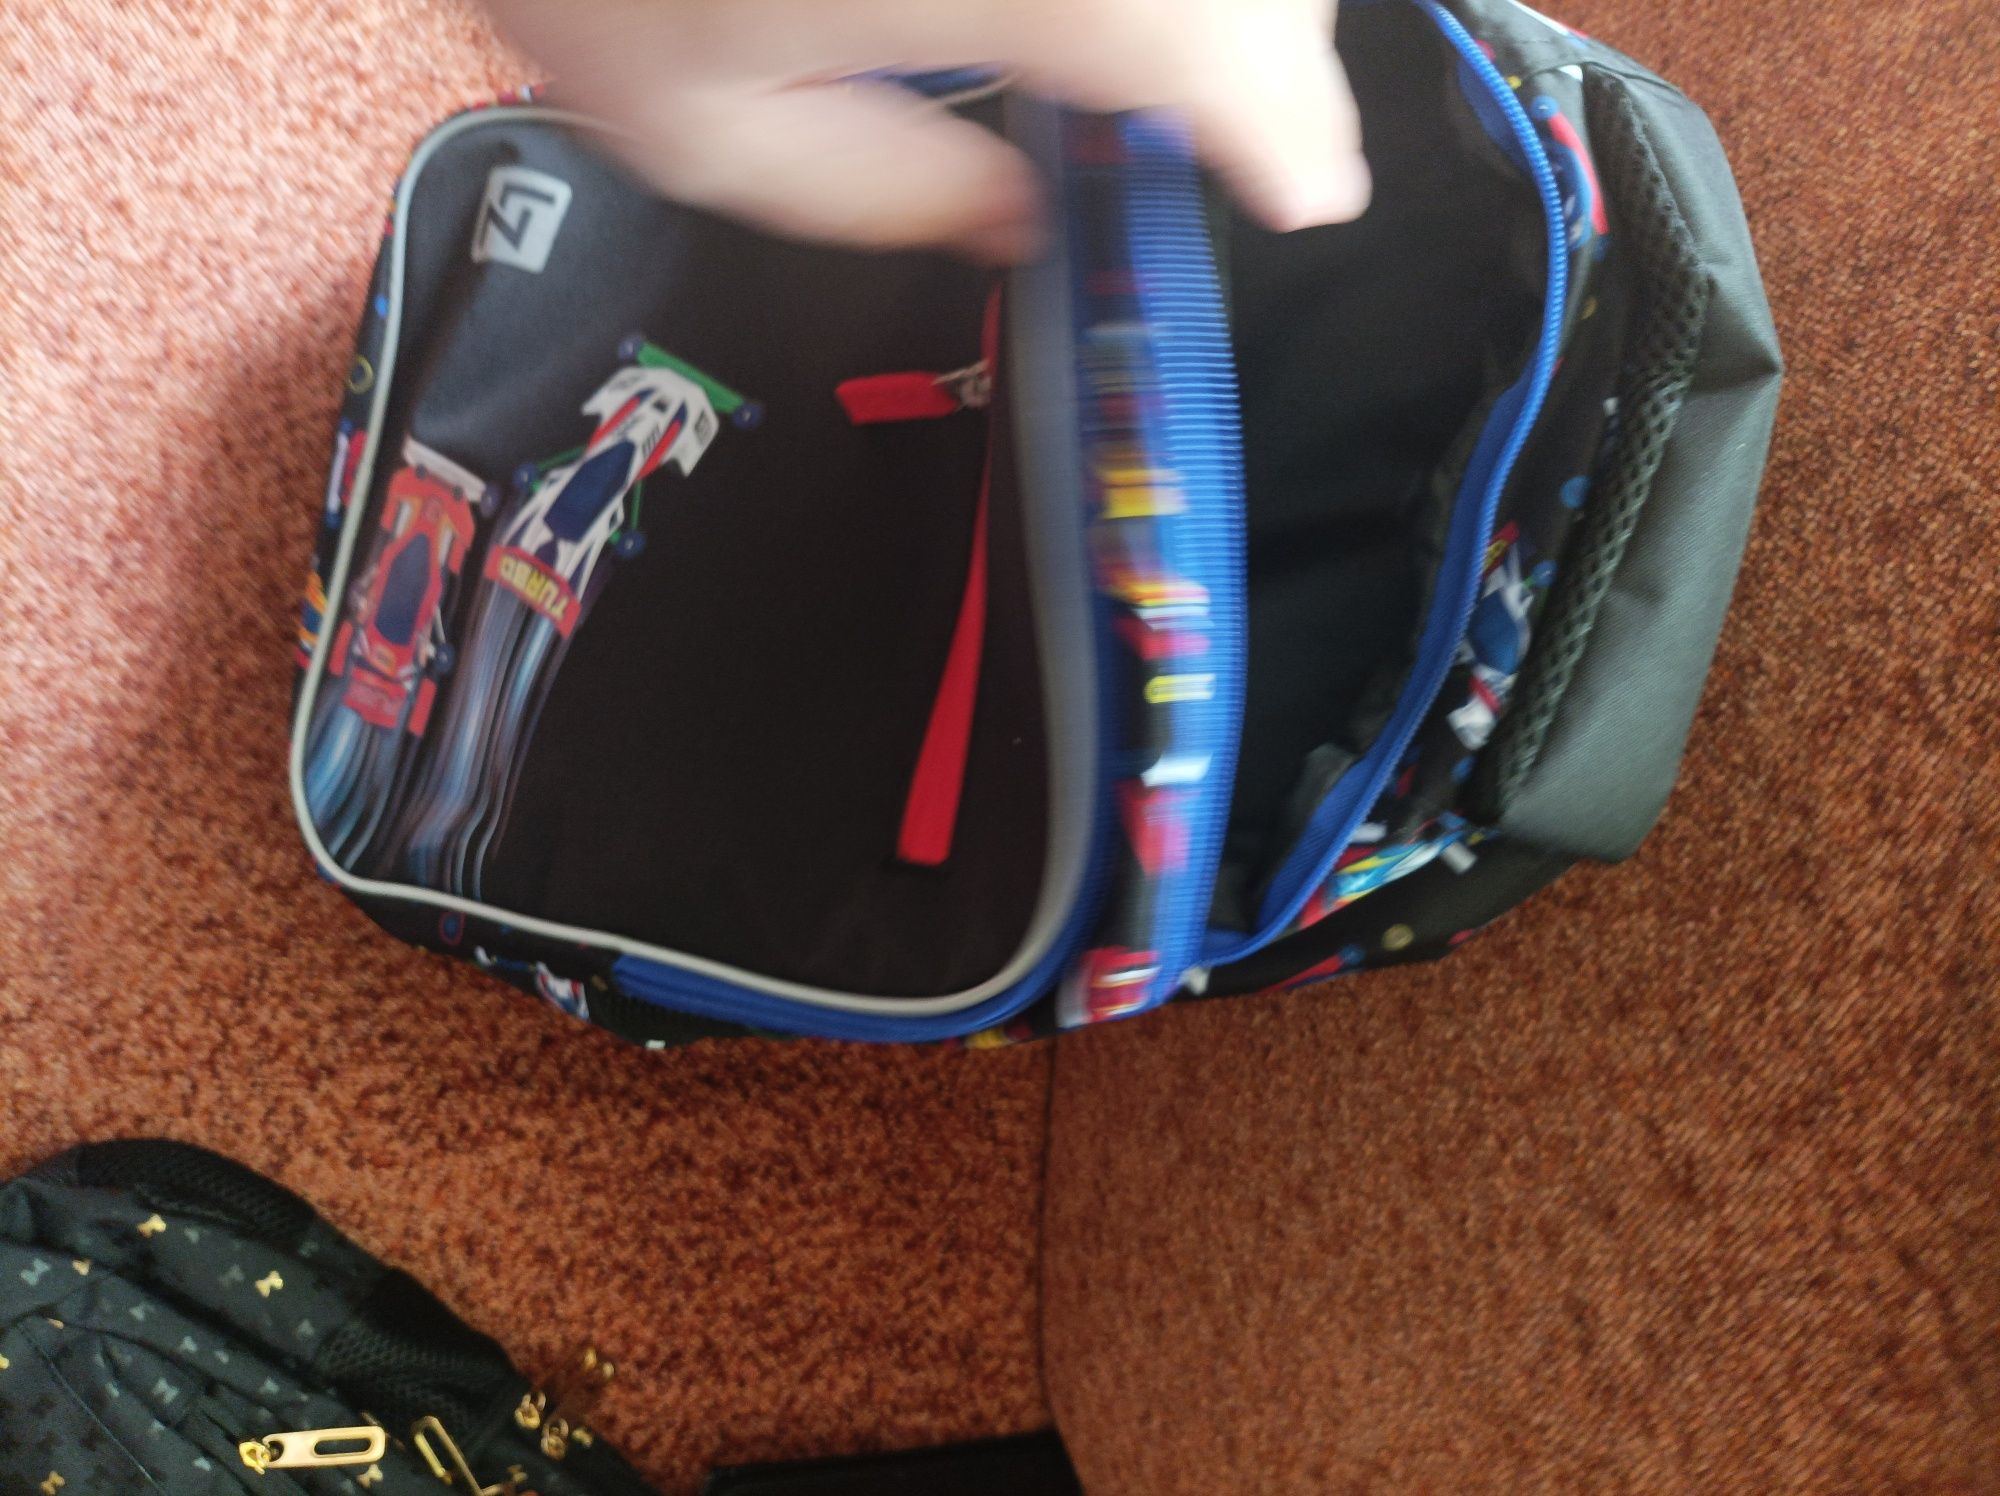 Plecak szkolny Loozz wyścig F1 turbo Majewski nowy wysyłka odblaski